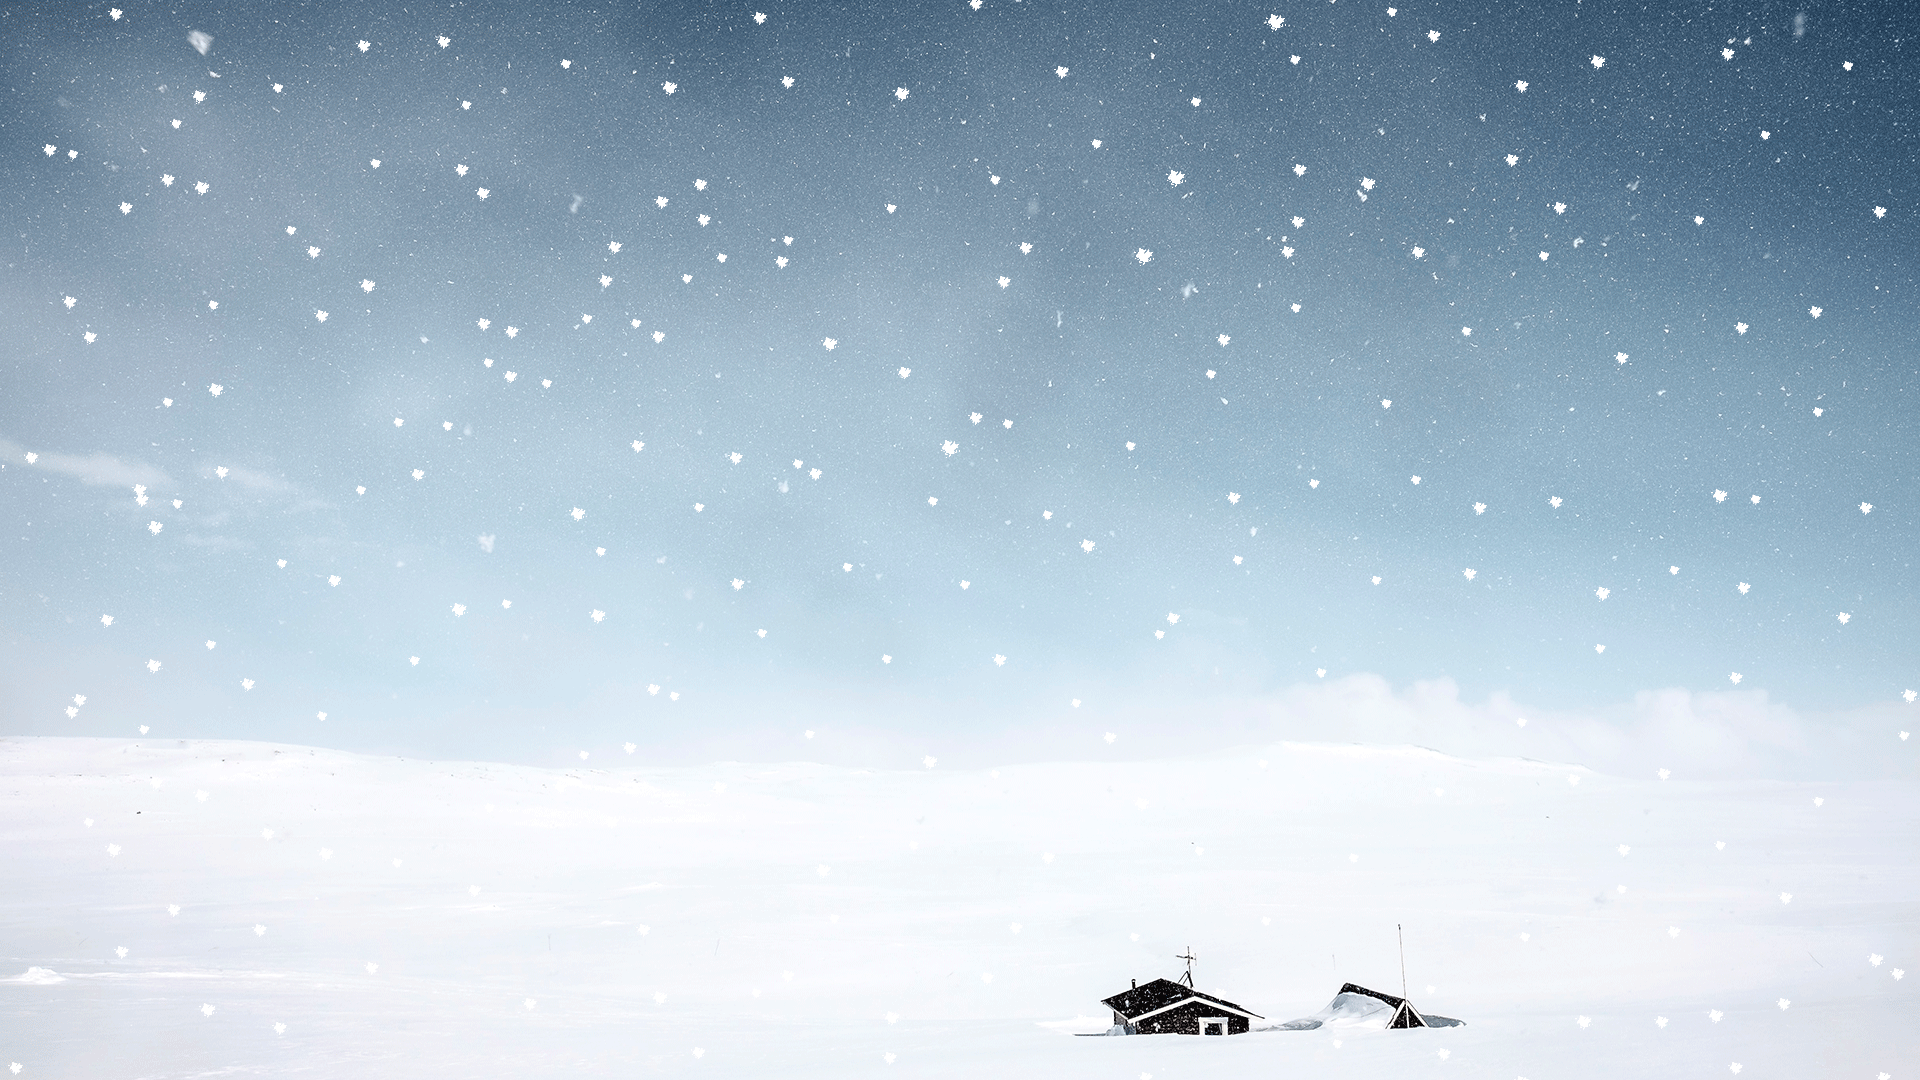 下雪场景,图片别处随便找了一张雪景图